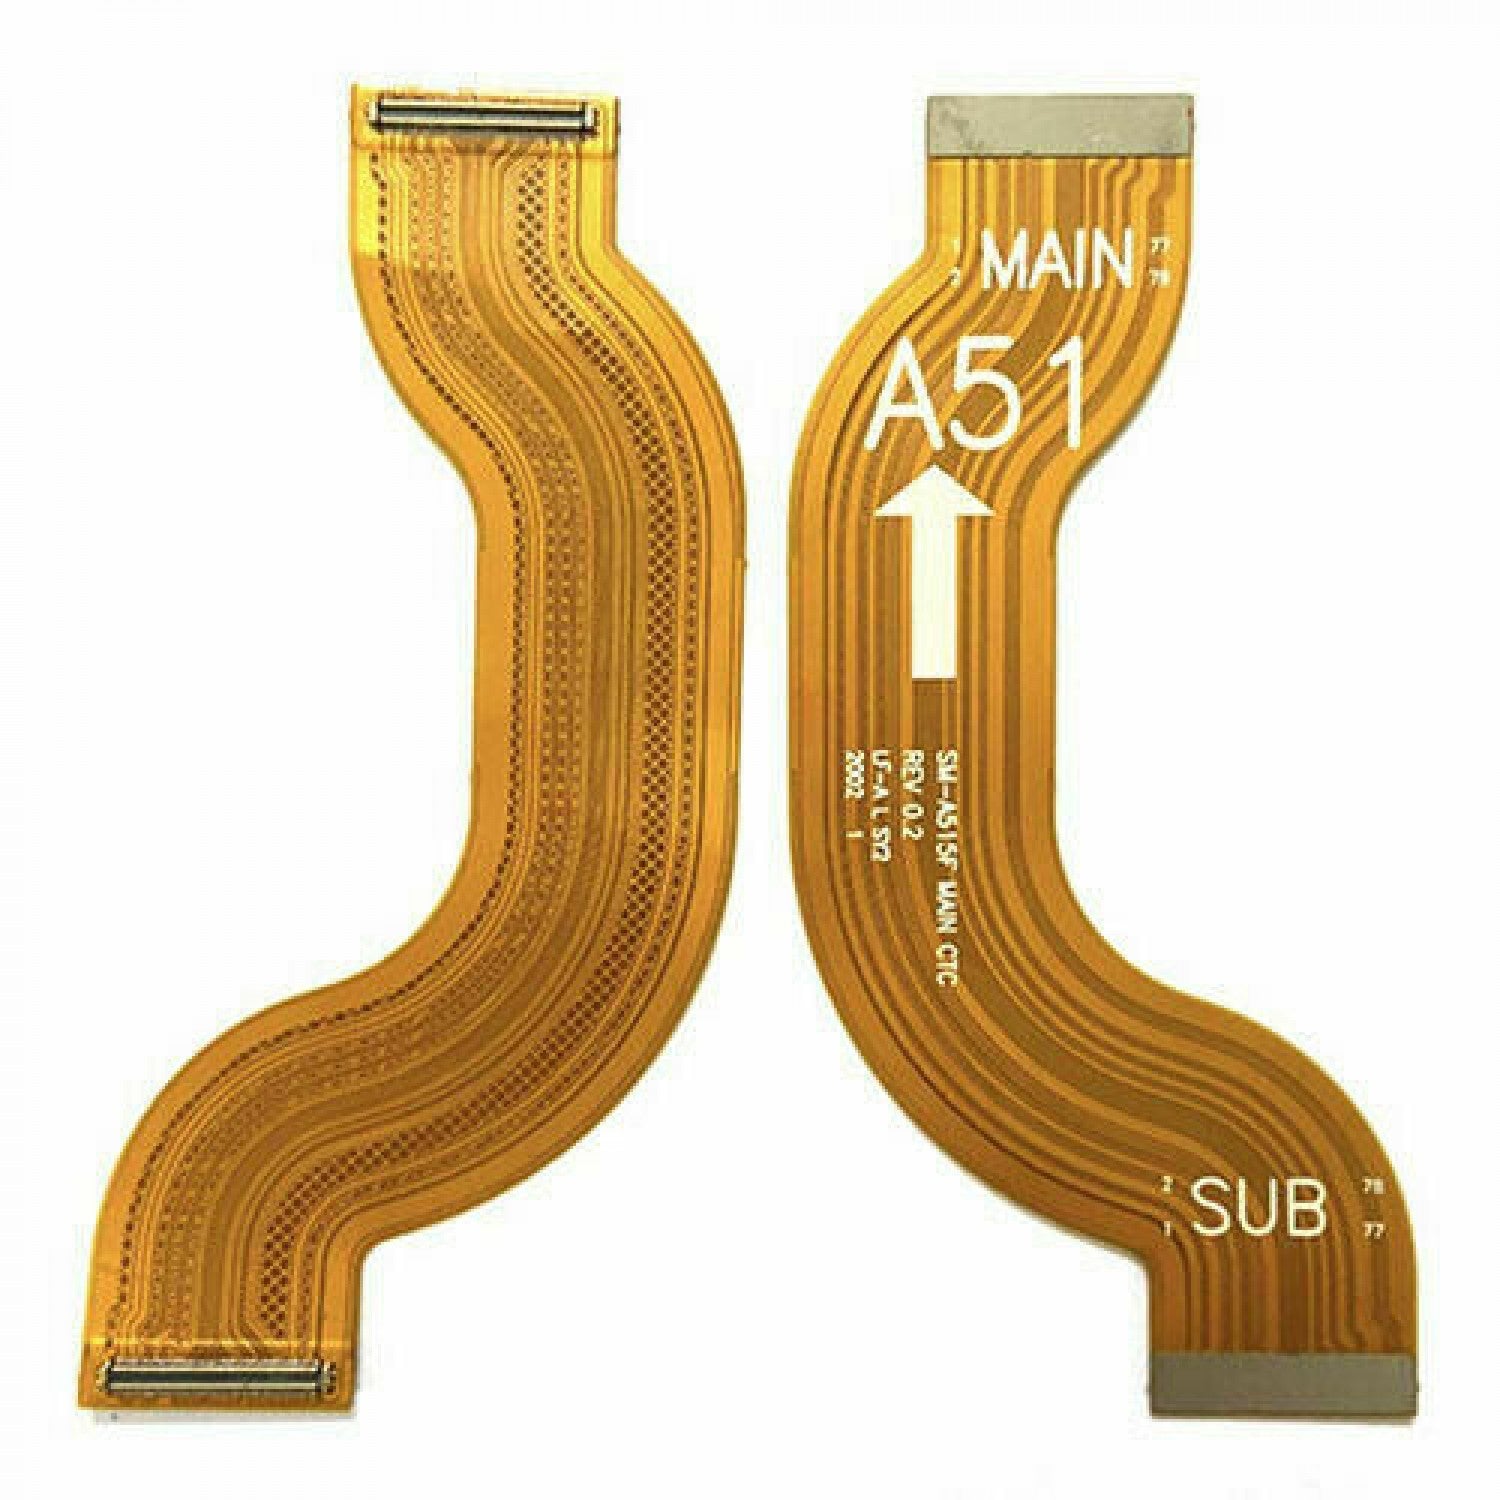 Main flex 1 for Samsung Galaxy A51 2020 A515, A515F, A515DS, A515FN, SM-A515